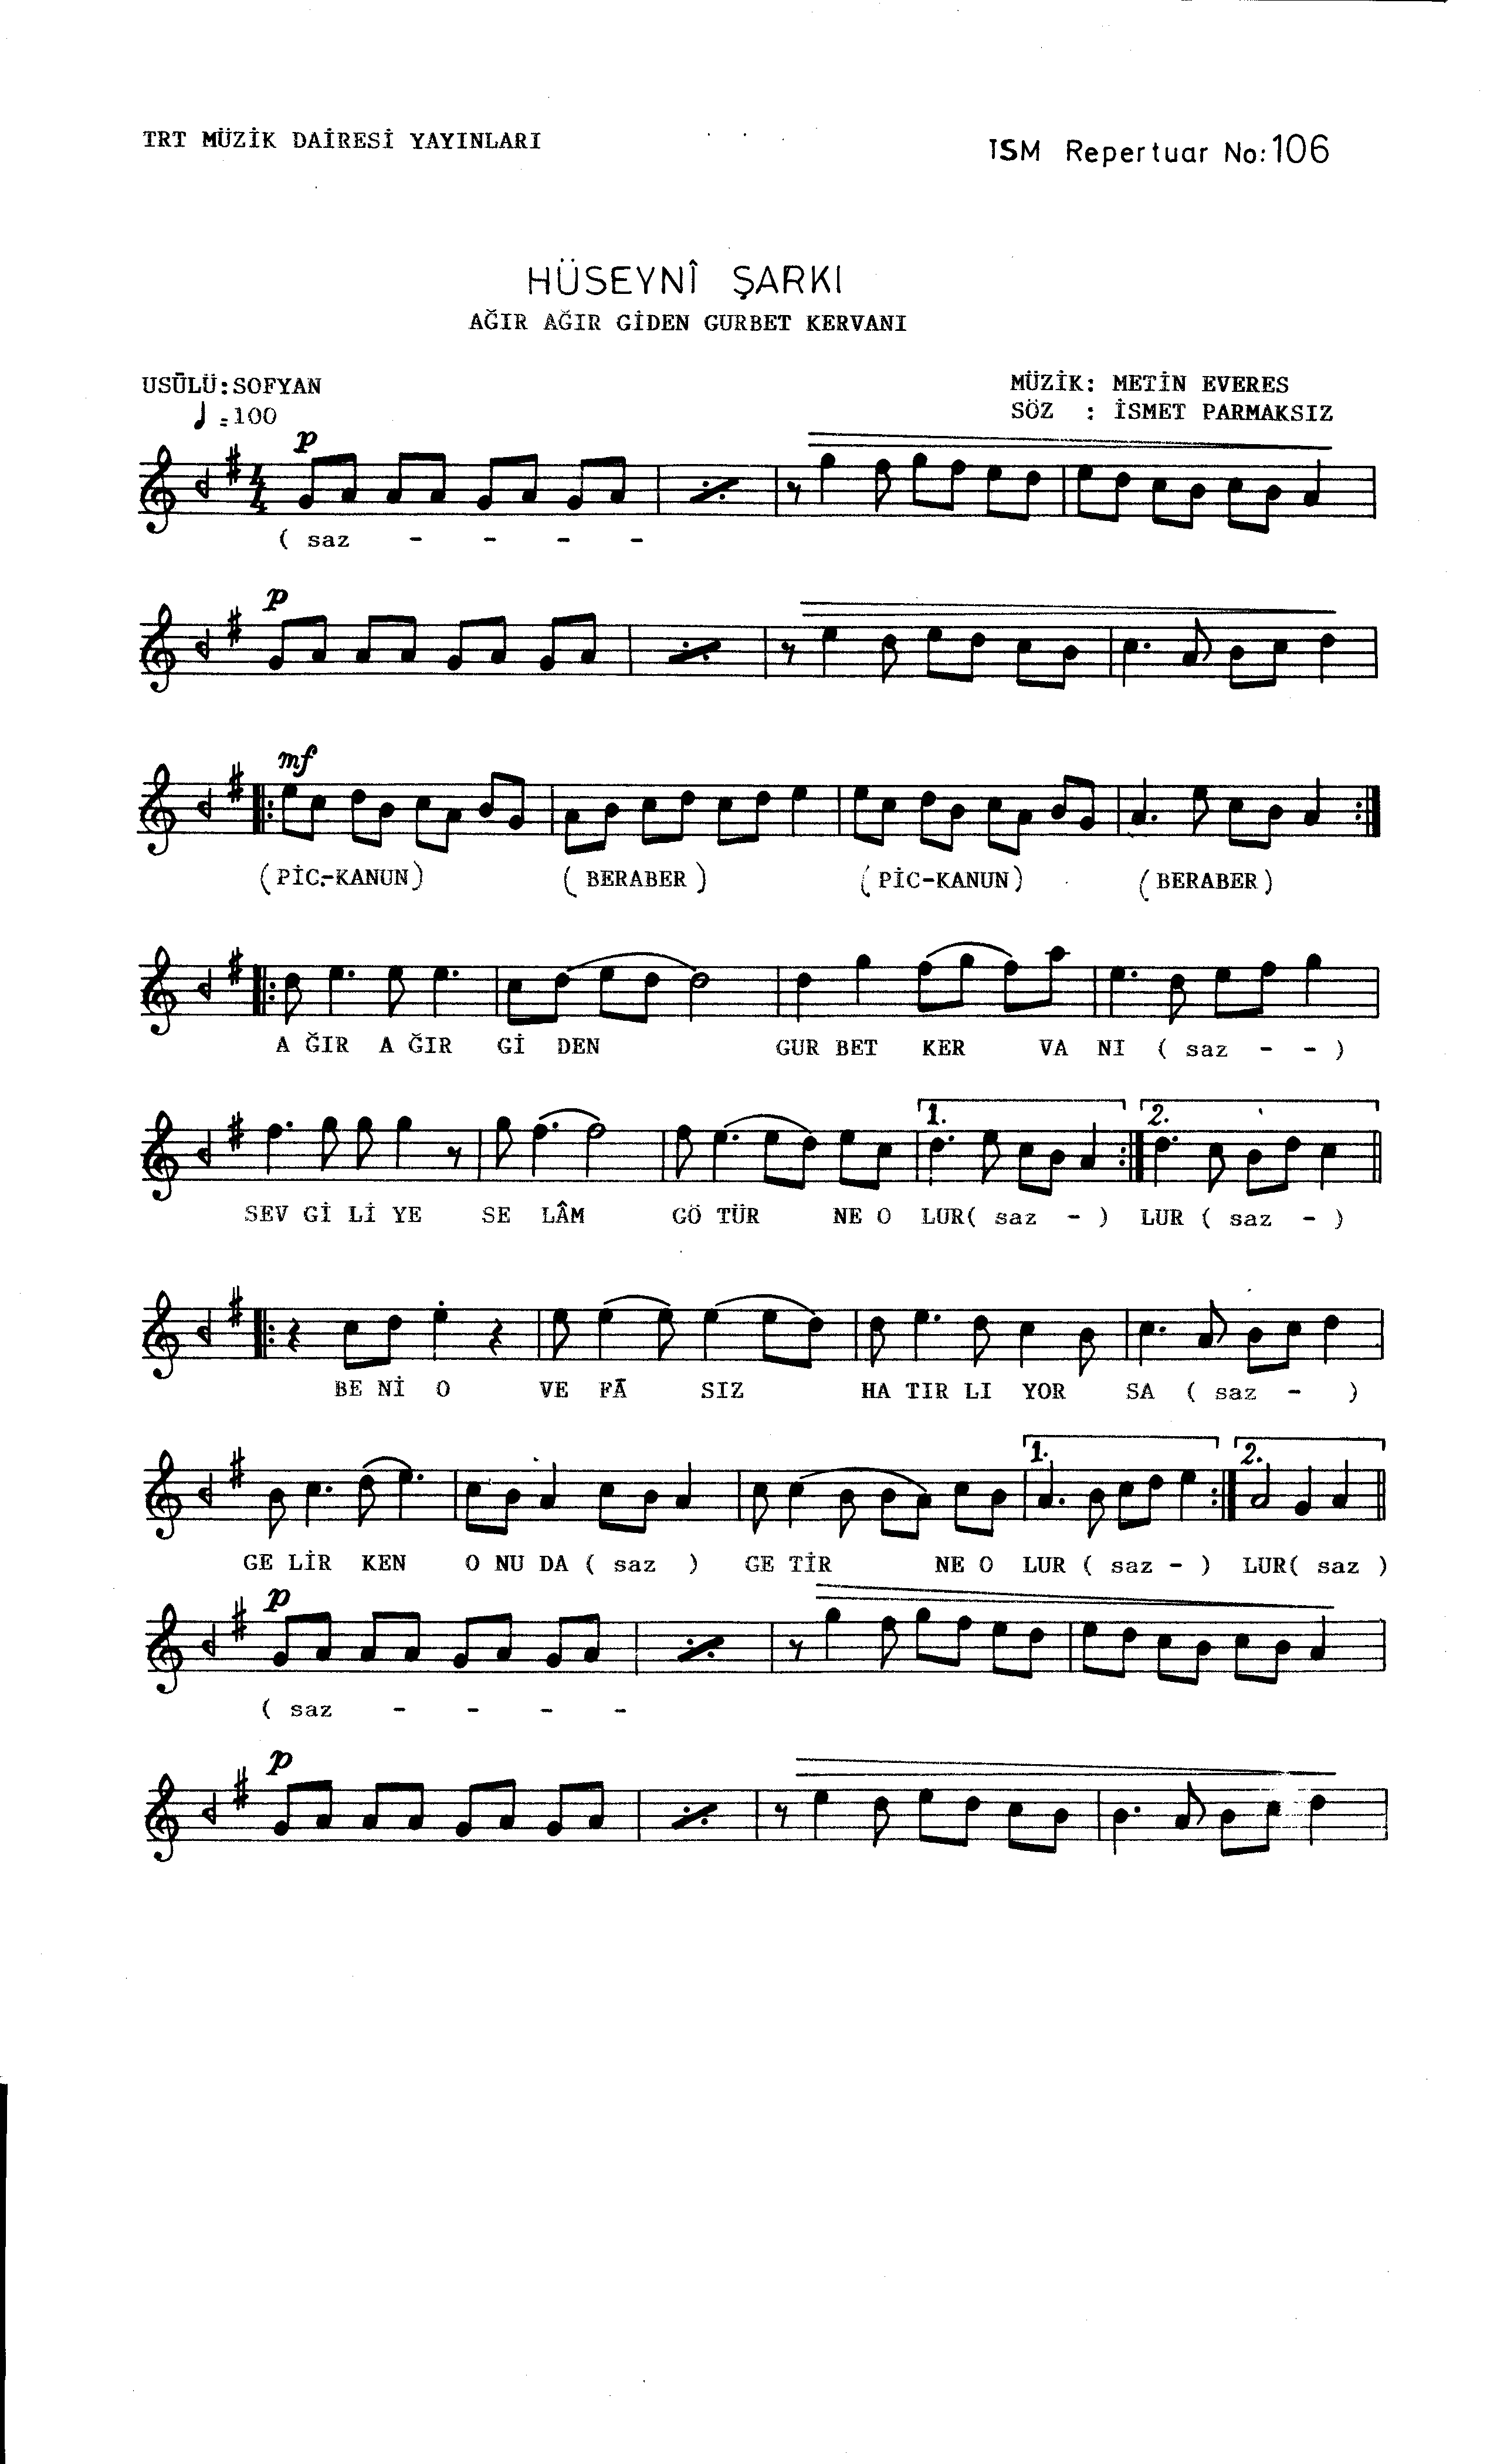 Hüseynî - Şarkı - Metin Everes - Sayfa 1